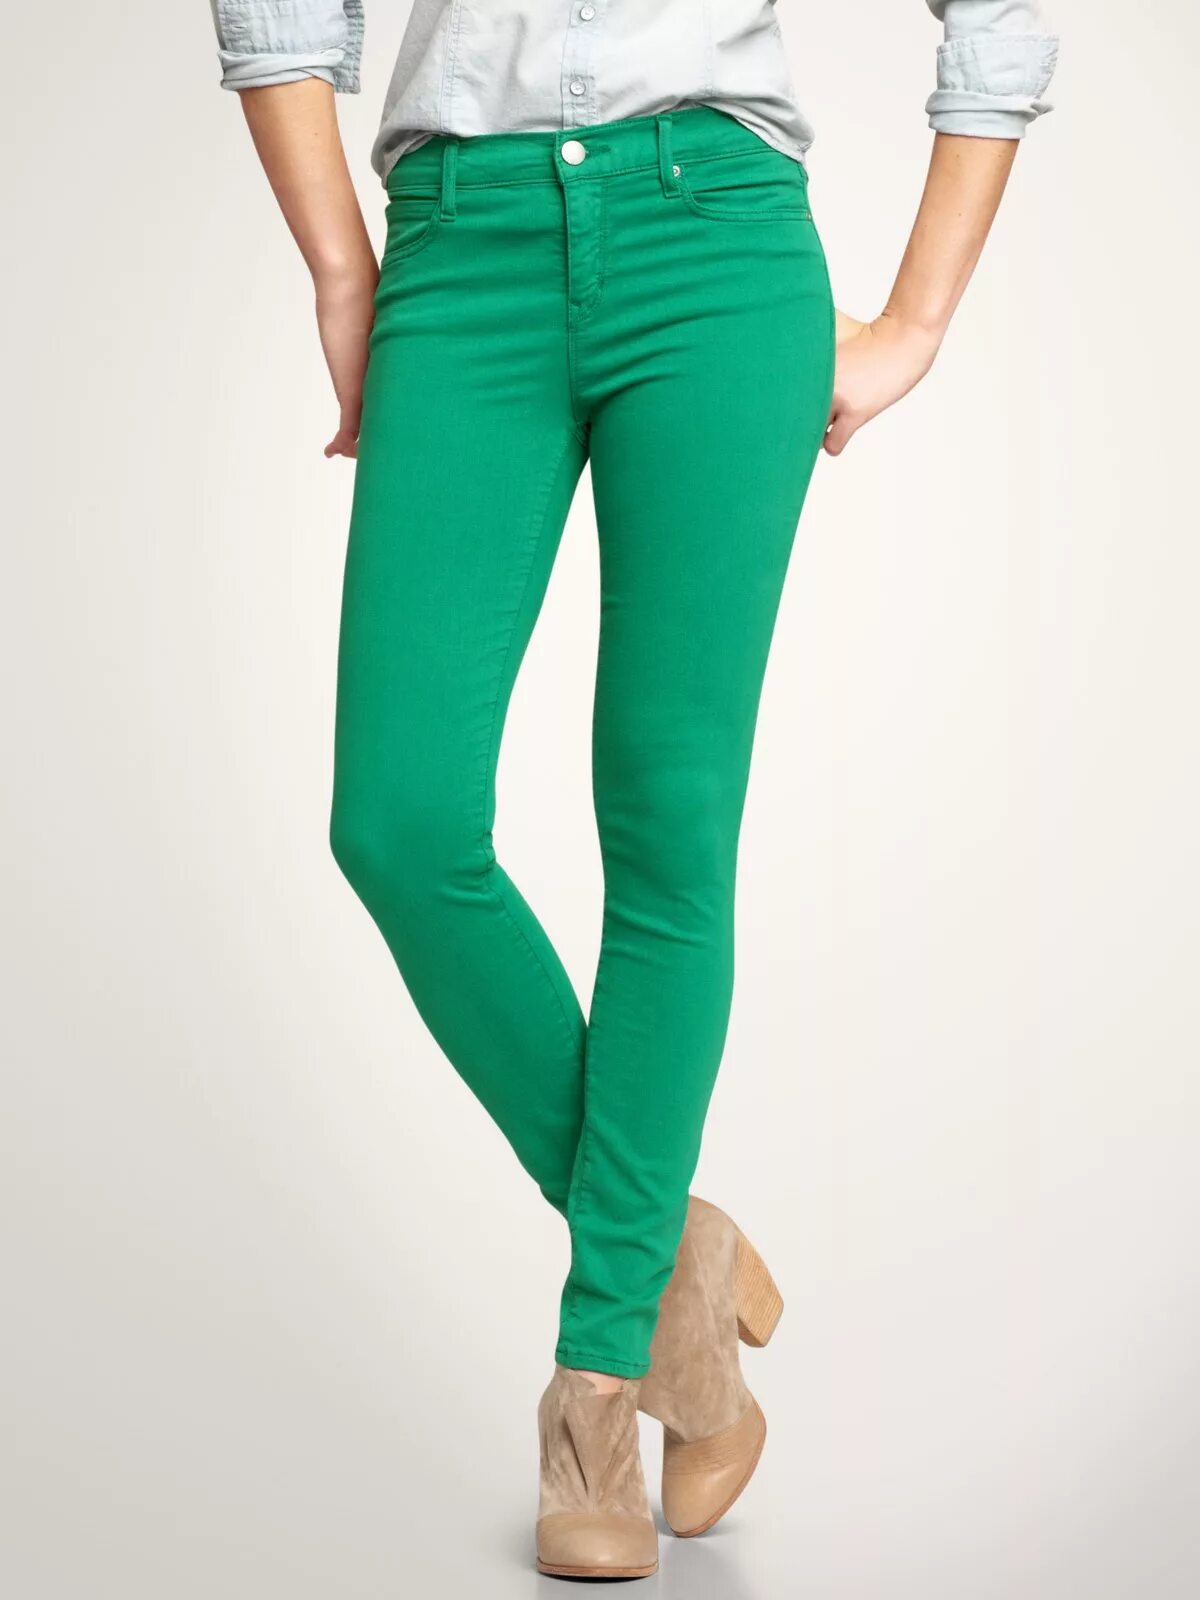 Джинса зеленая купить. Джон Девин зеленые джинсы. Брюки Бифри зеленые скинни. Брюки Mango Basics изумрудно-зелёные. Mango Kaia зеленые джинсы.